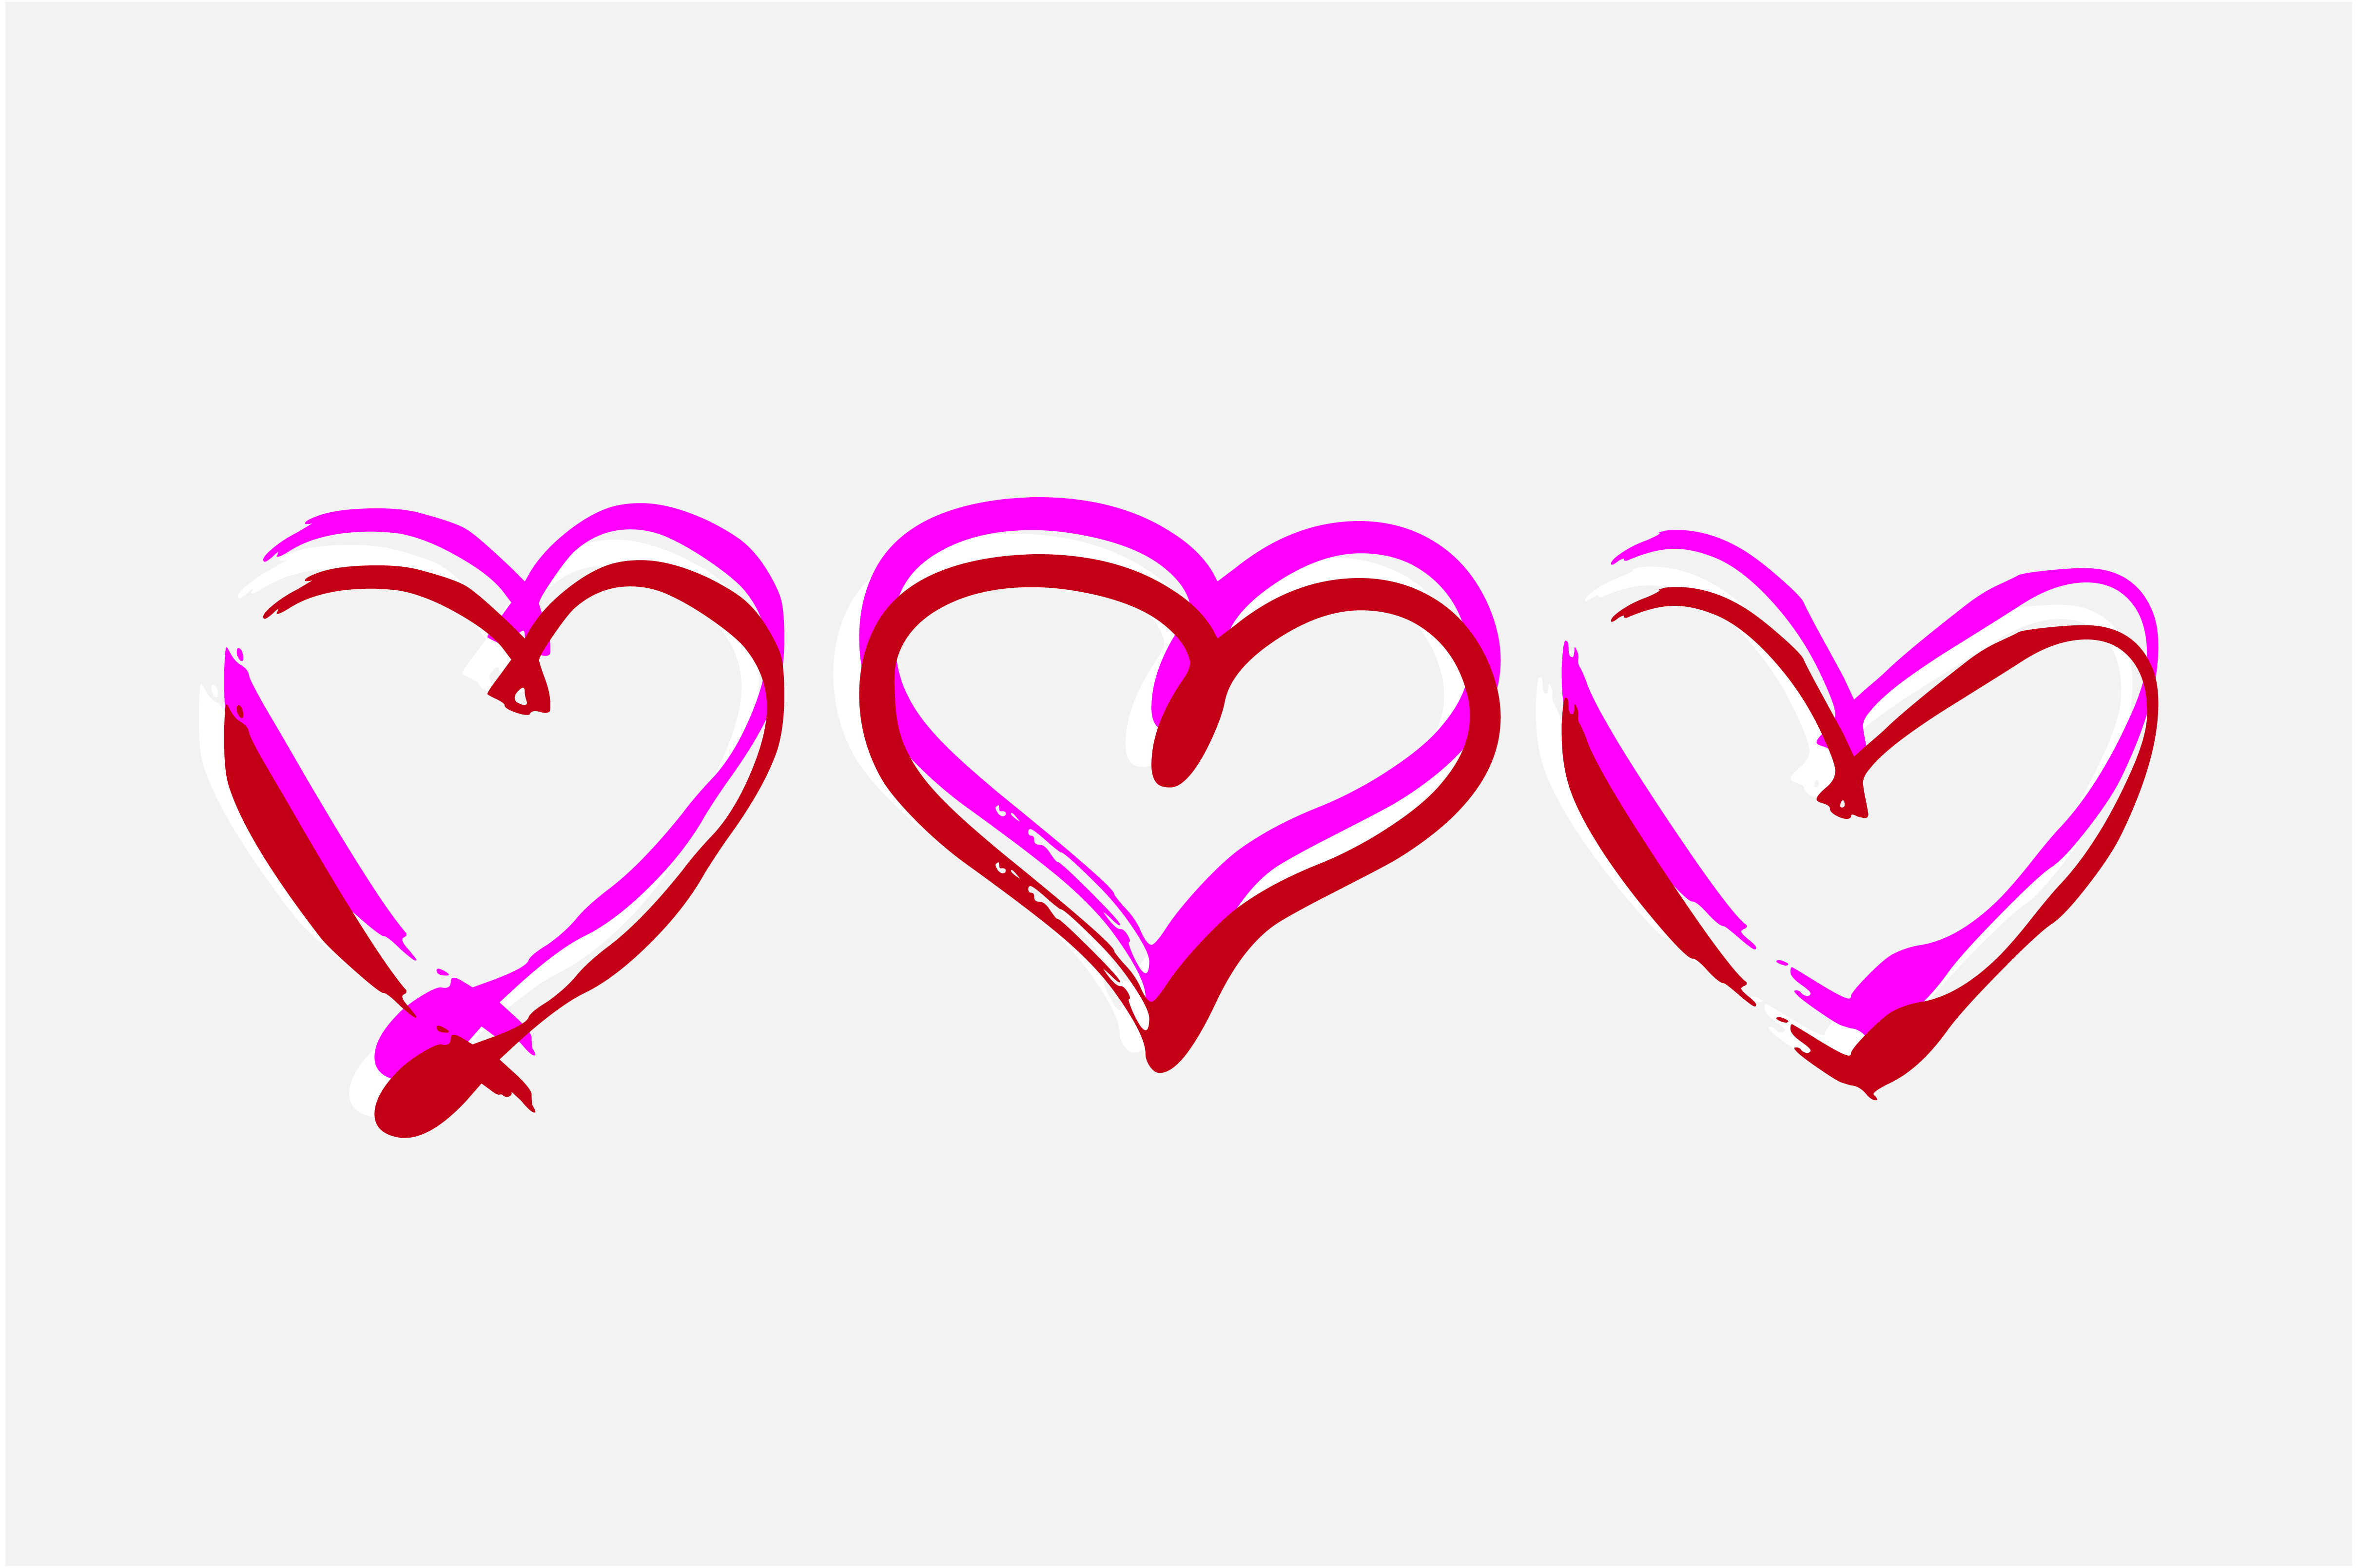 Hearts Font